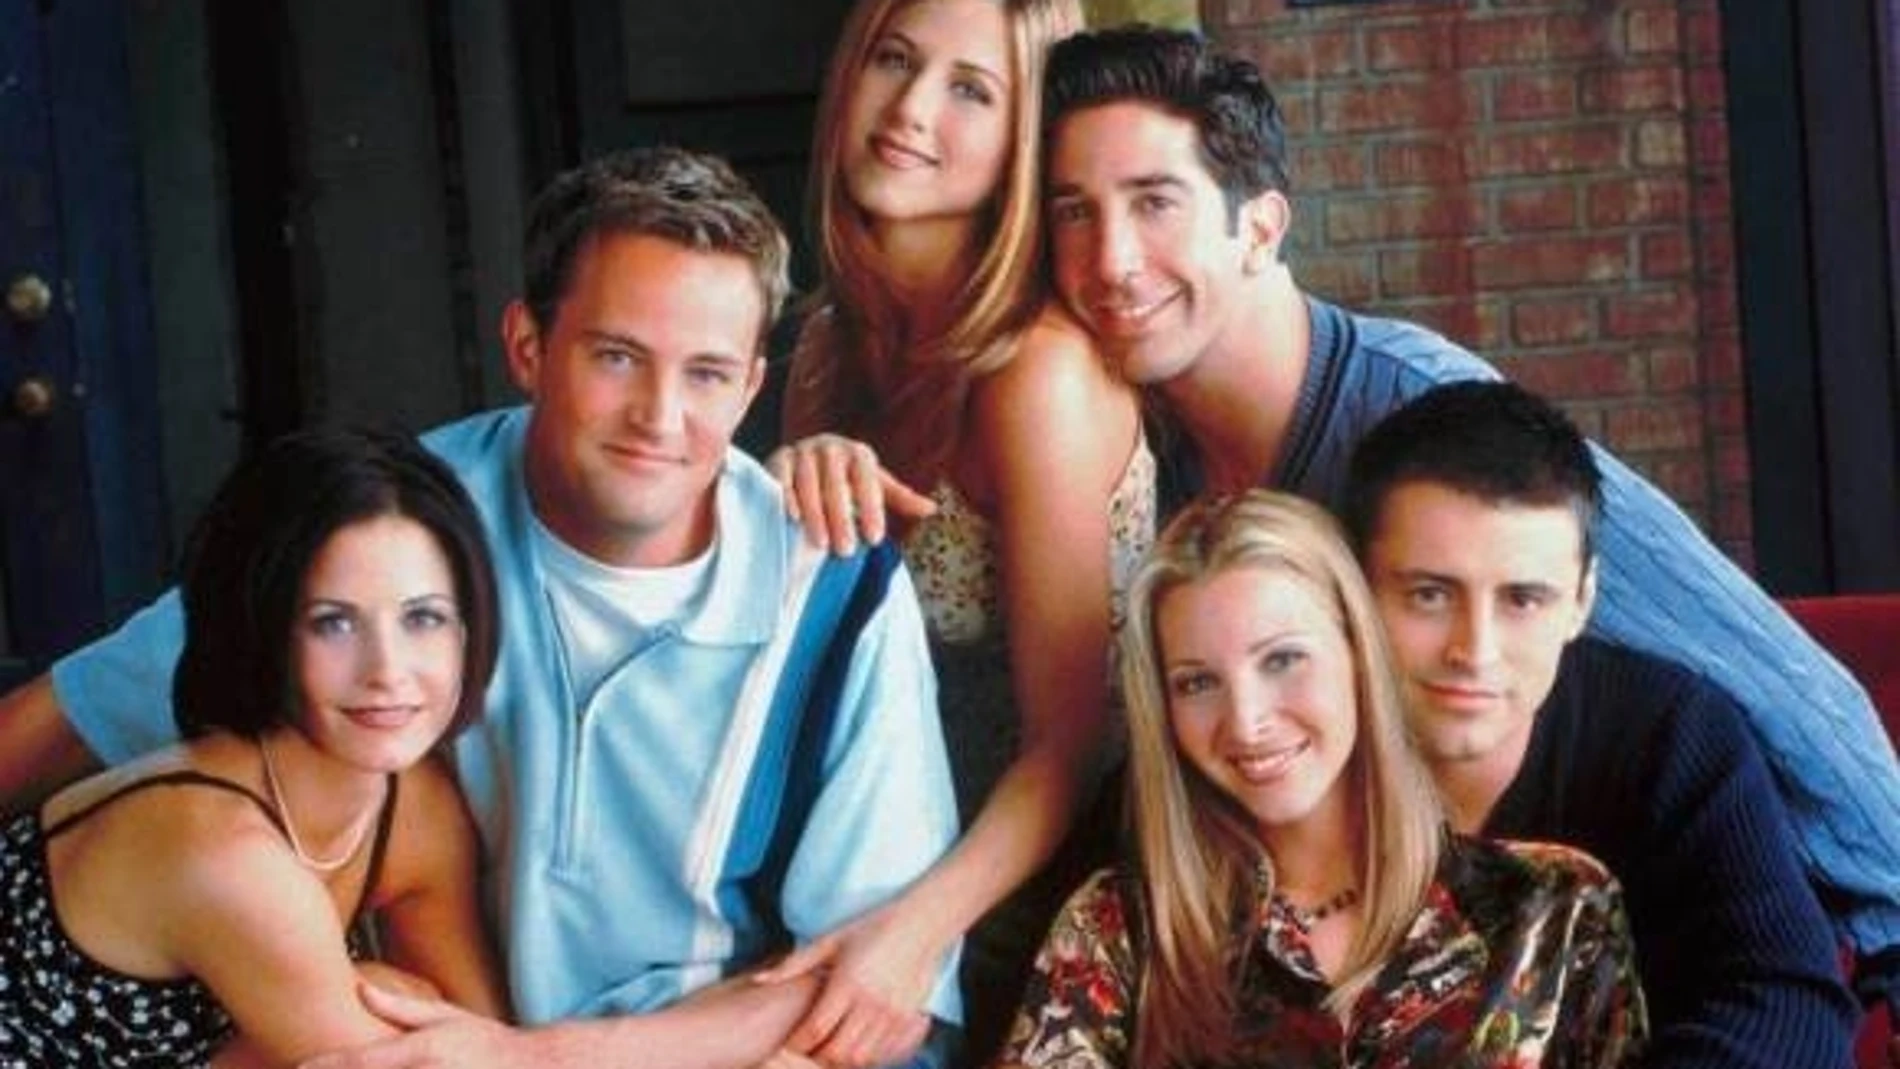 Jennifer Aniston desvela que “Friends” casi despide a dos de los actores  principales